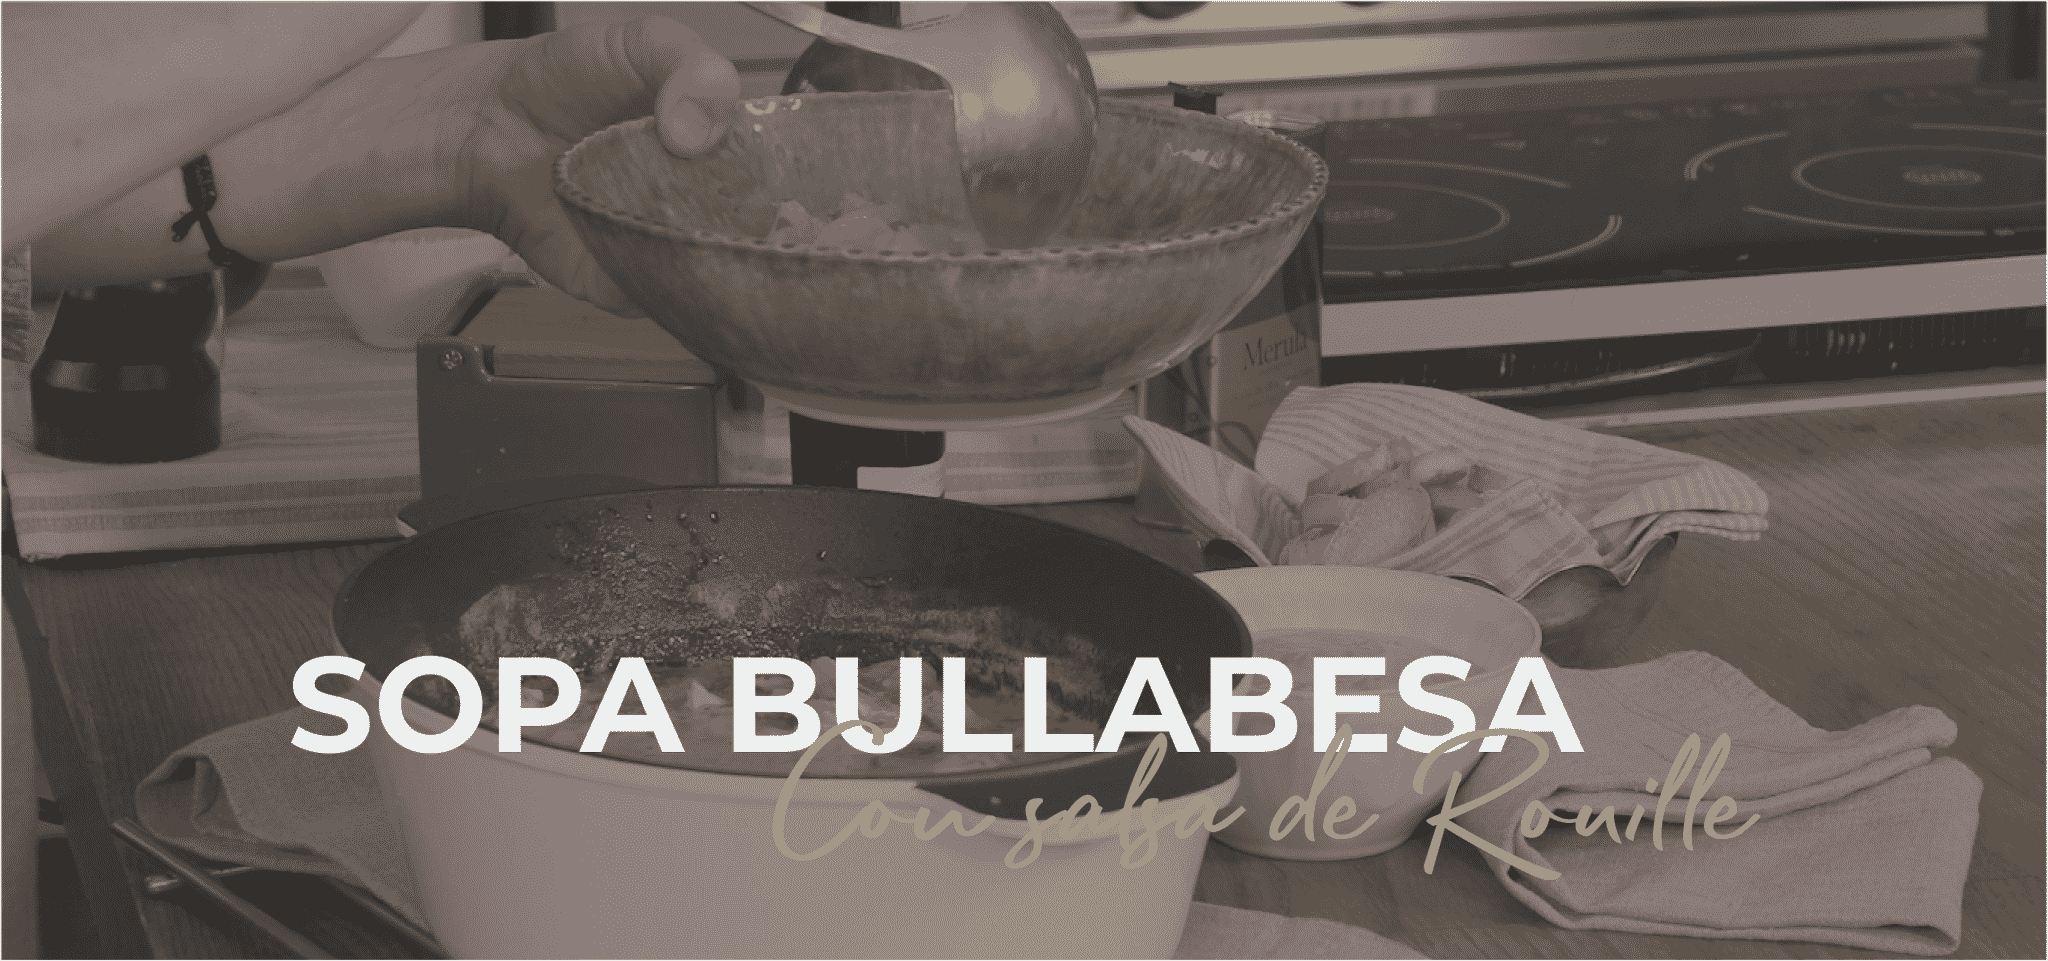 Sopa Bullabesa 08